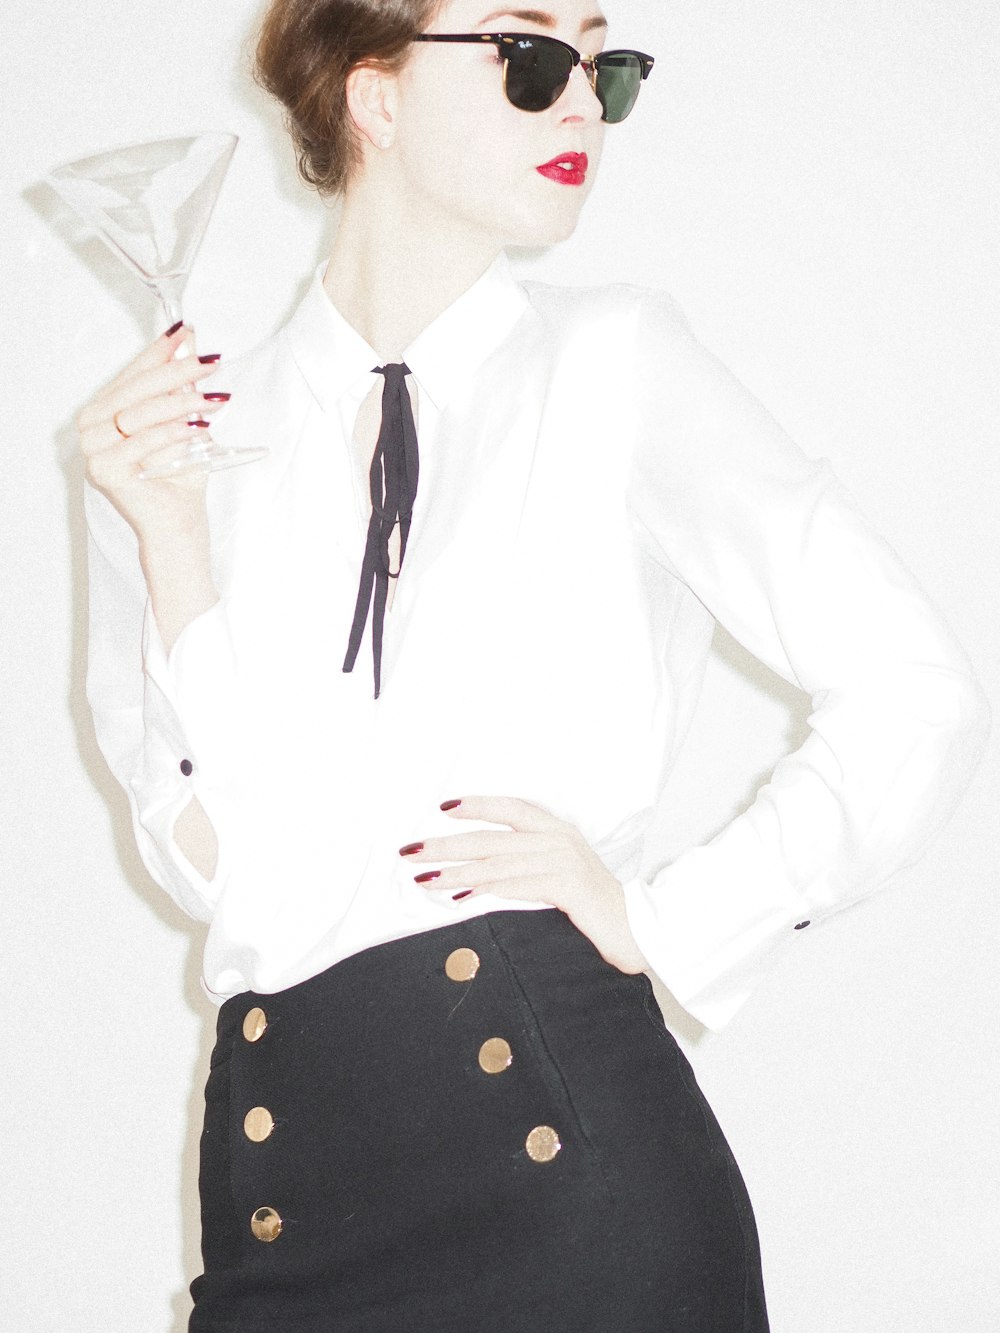 Foto mujer con blazer blanco y falda de lunares en blanco y negro – Imagen  Los angeles gratis en Unsplash